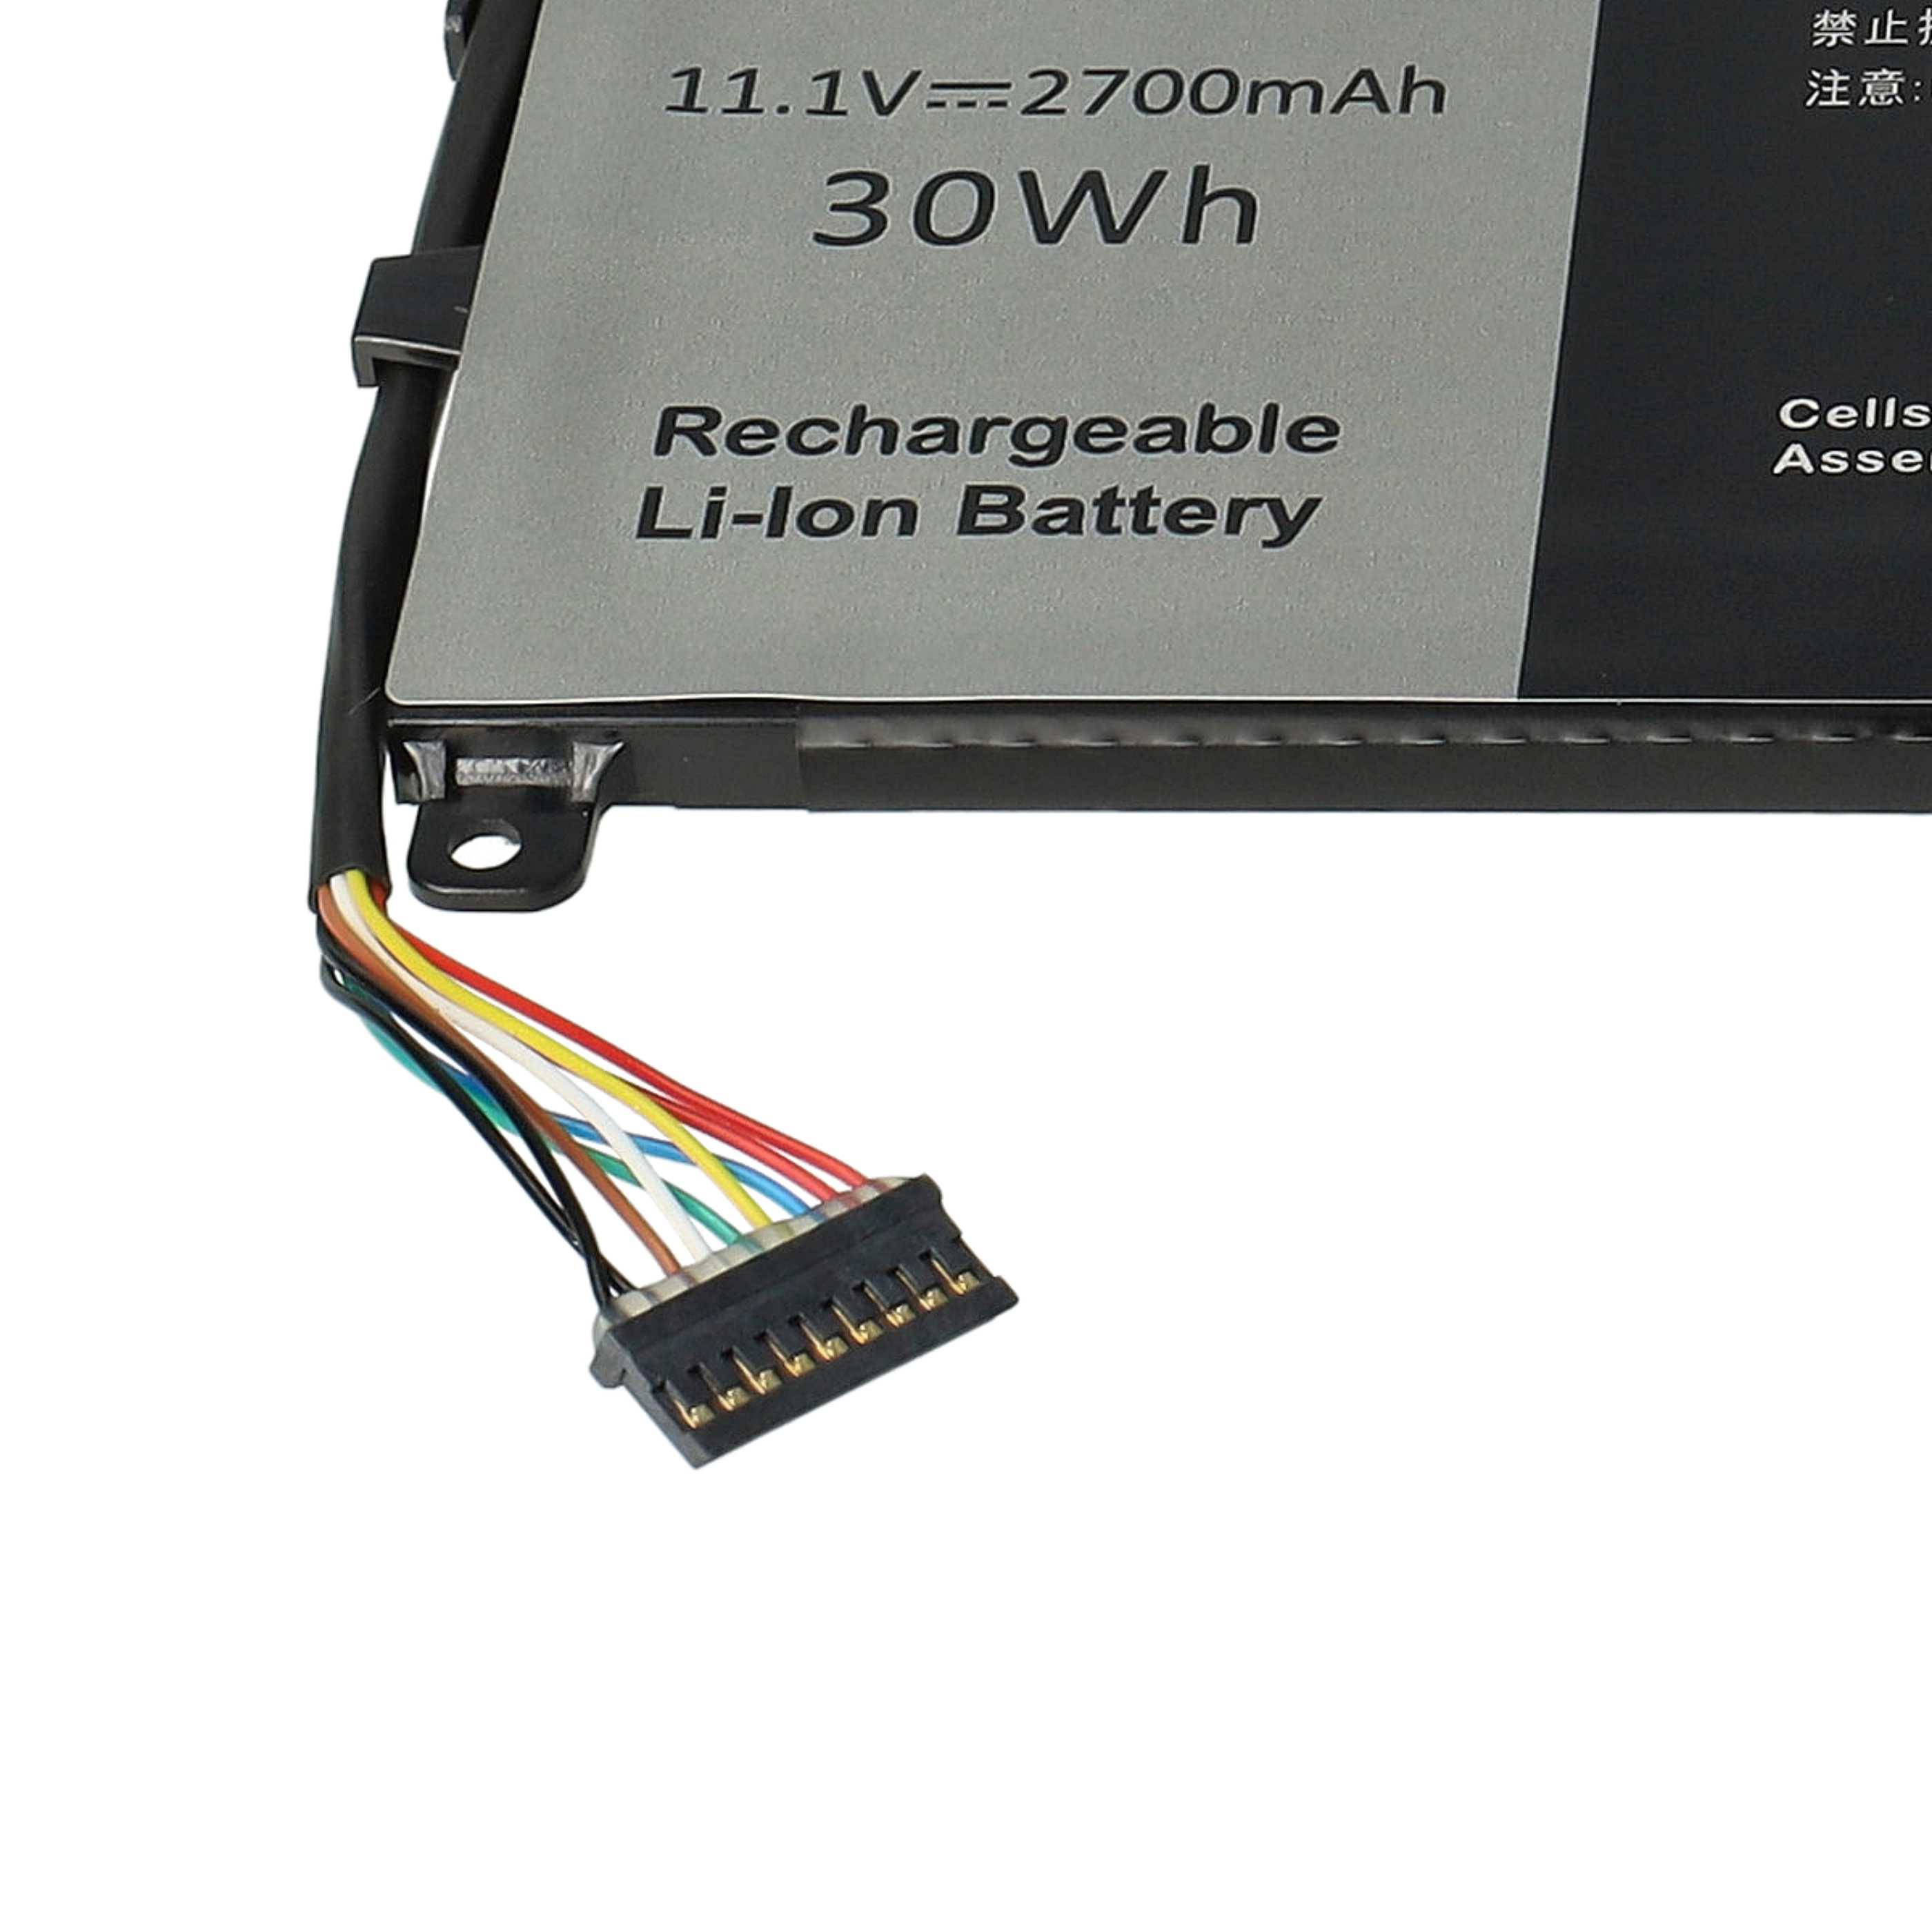 Batterie remplace Dell 3WKT0, 0MN791, 271J9, 0GWV47 pour ordinateur portable - 2700mAh 11,1V Li-polymère, noir